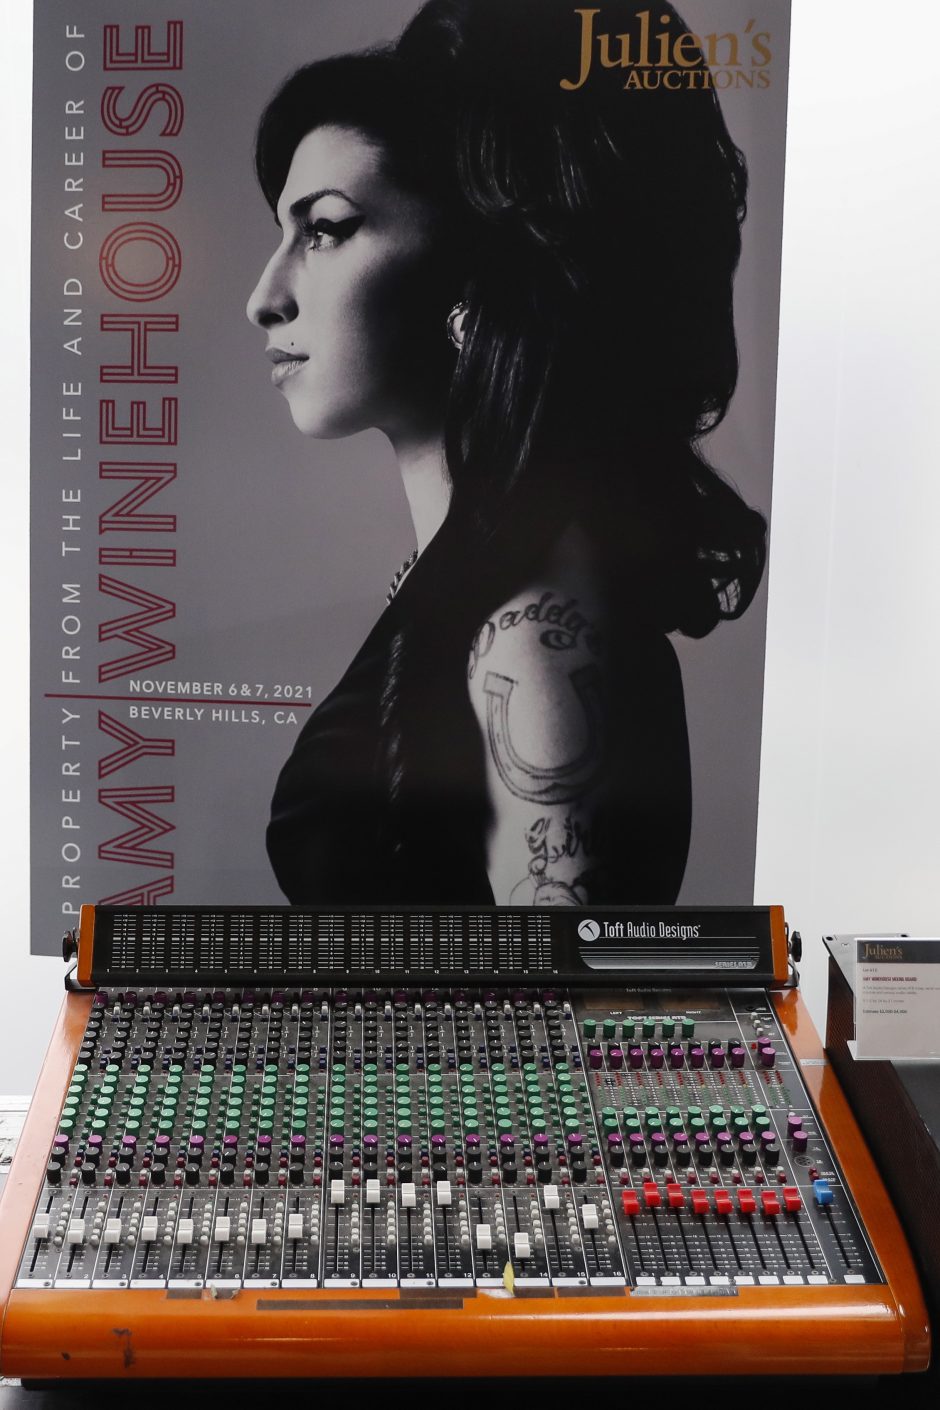 Prieš dešimt metų mirusios A. Winehouse daiktų aukcionas pranoko lūkesčius